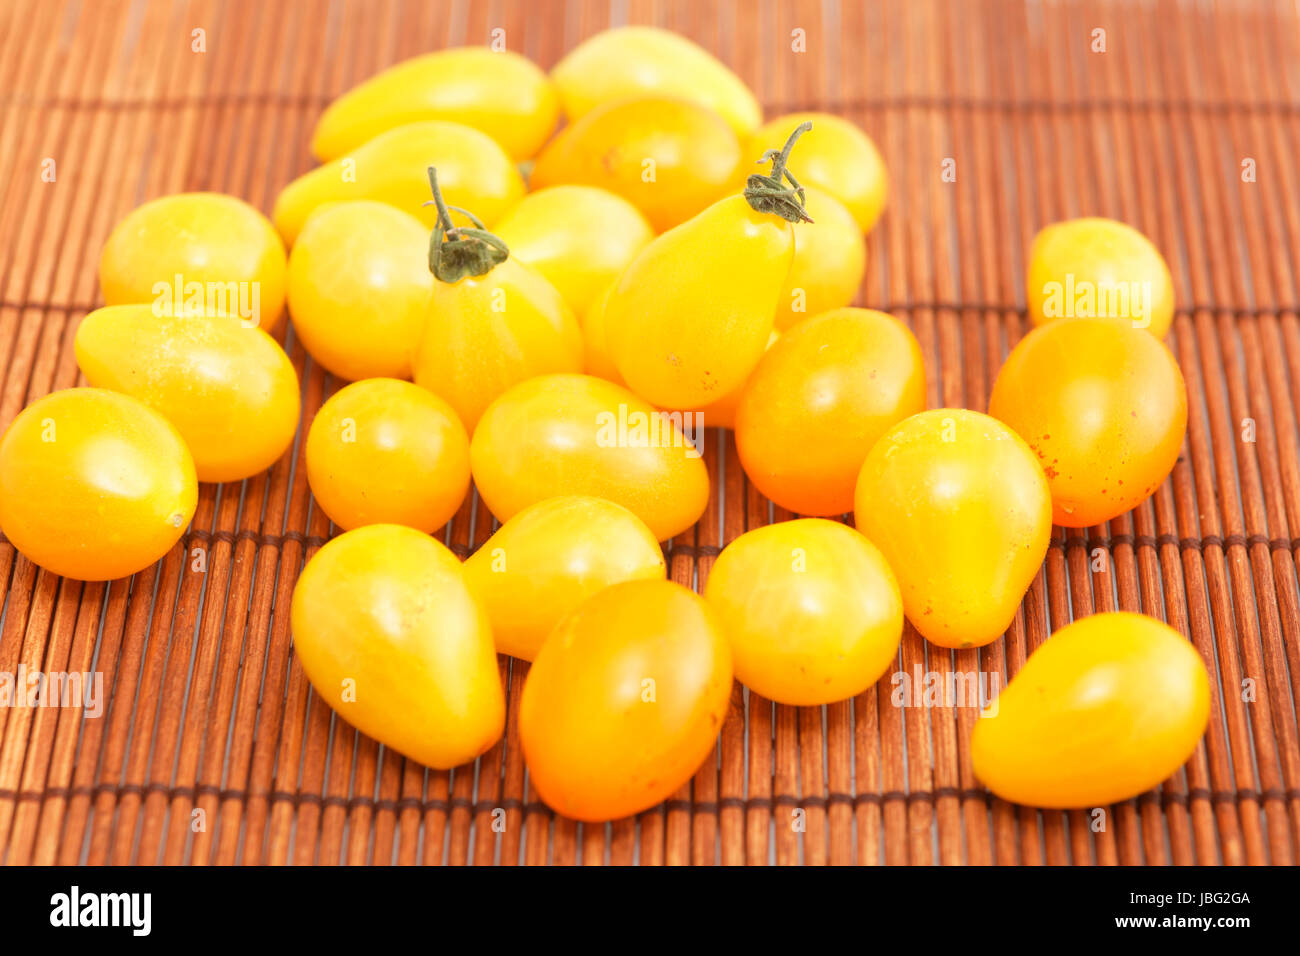 yellow plum tomatoes Stock Photo